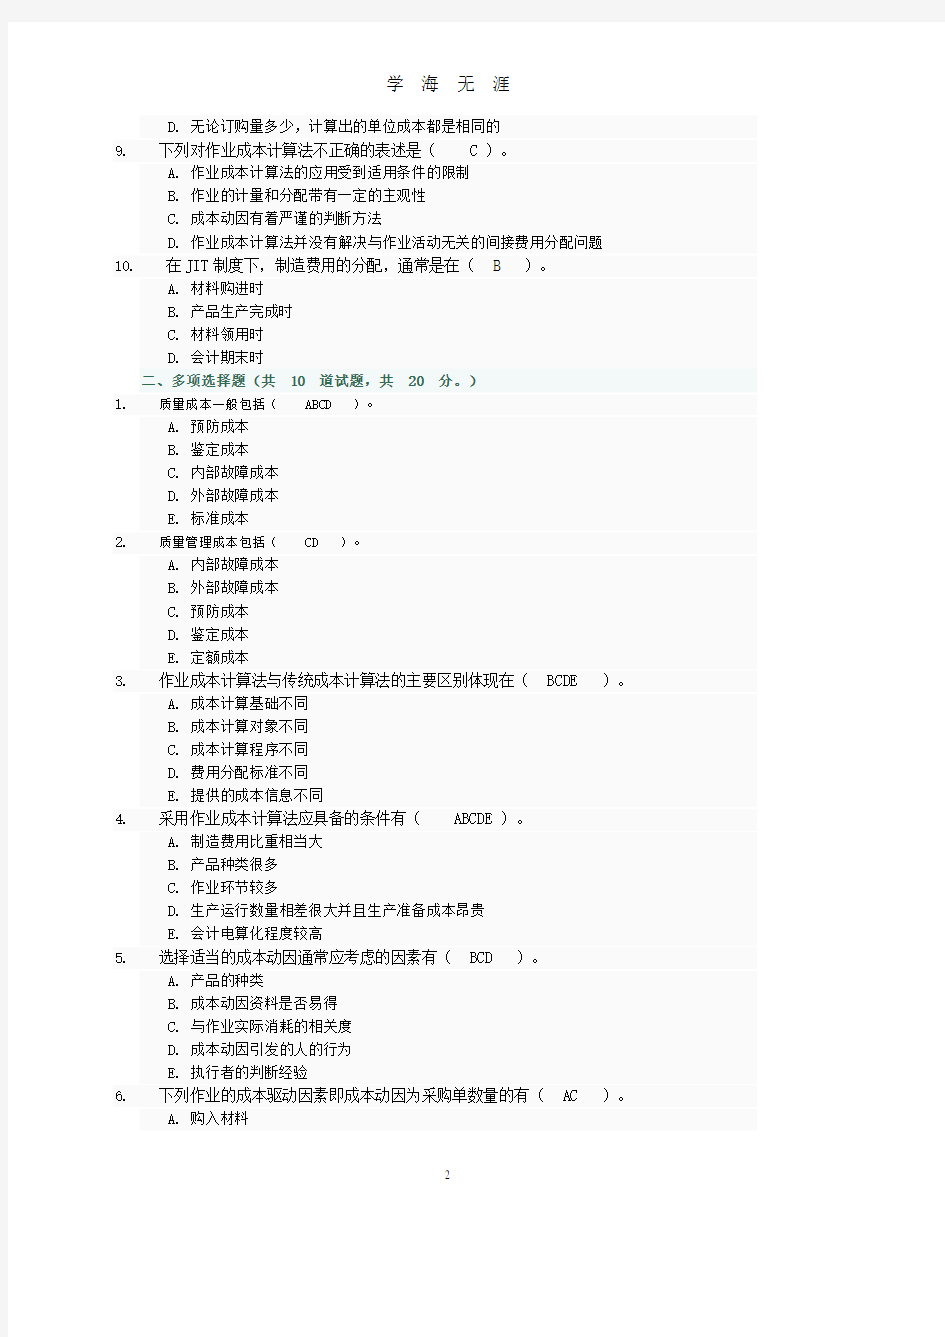 中央电大网上形考04任务部分参考答案(7月20日).pdf